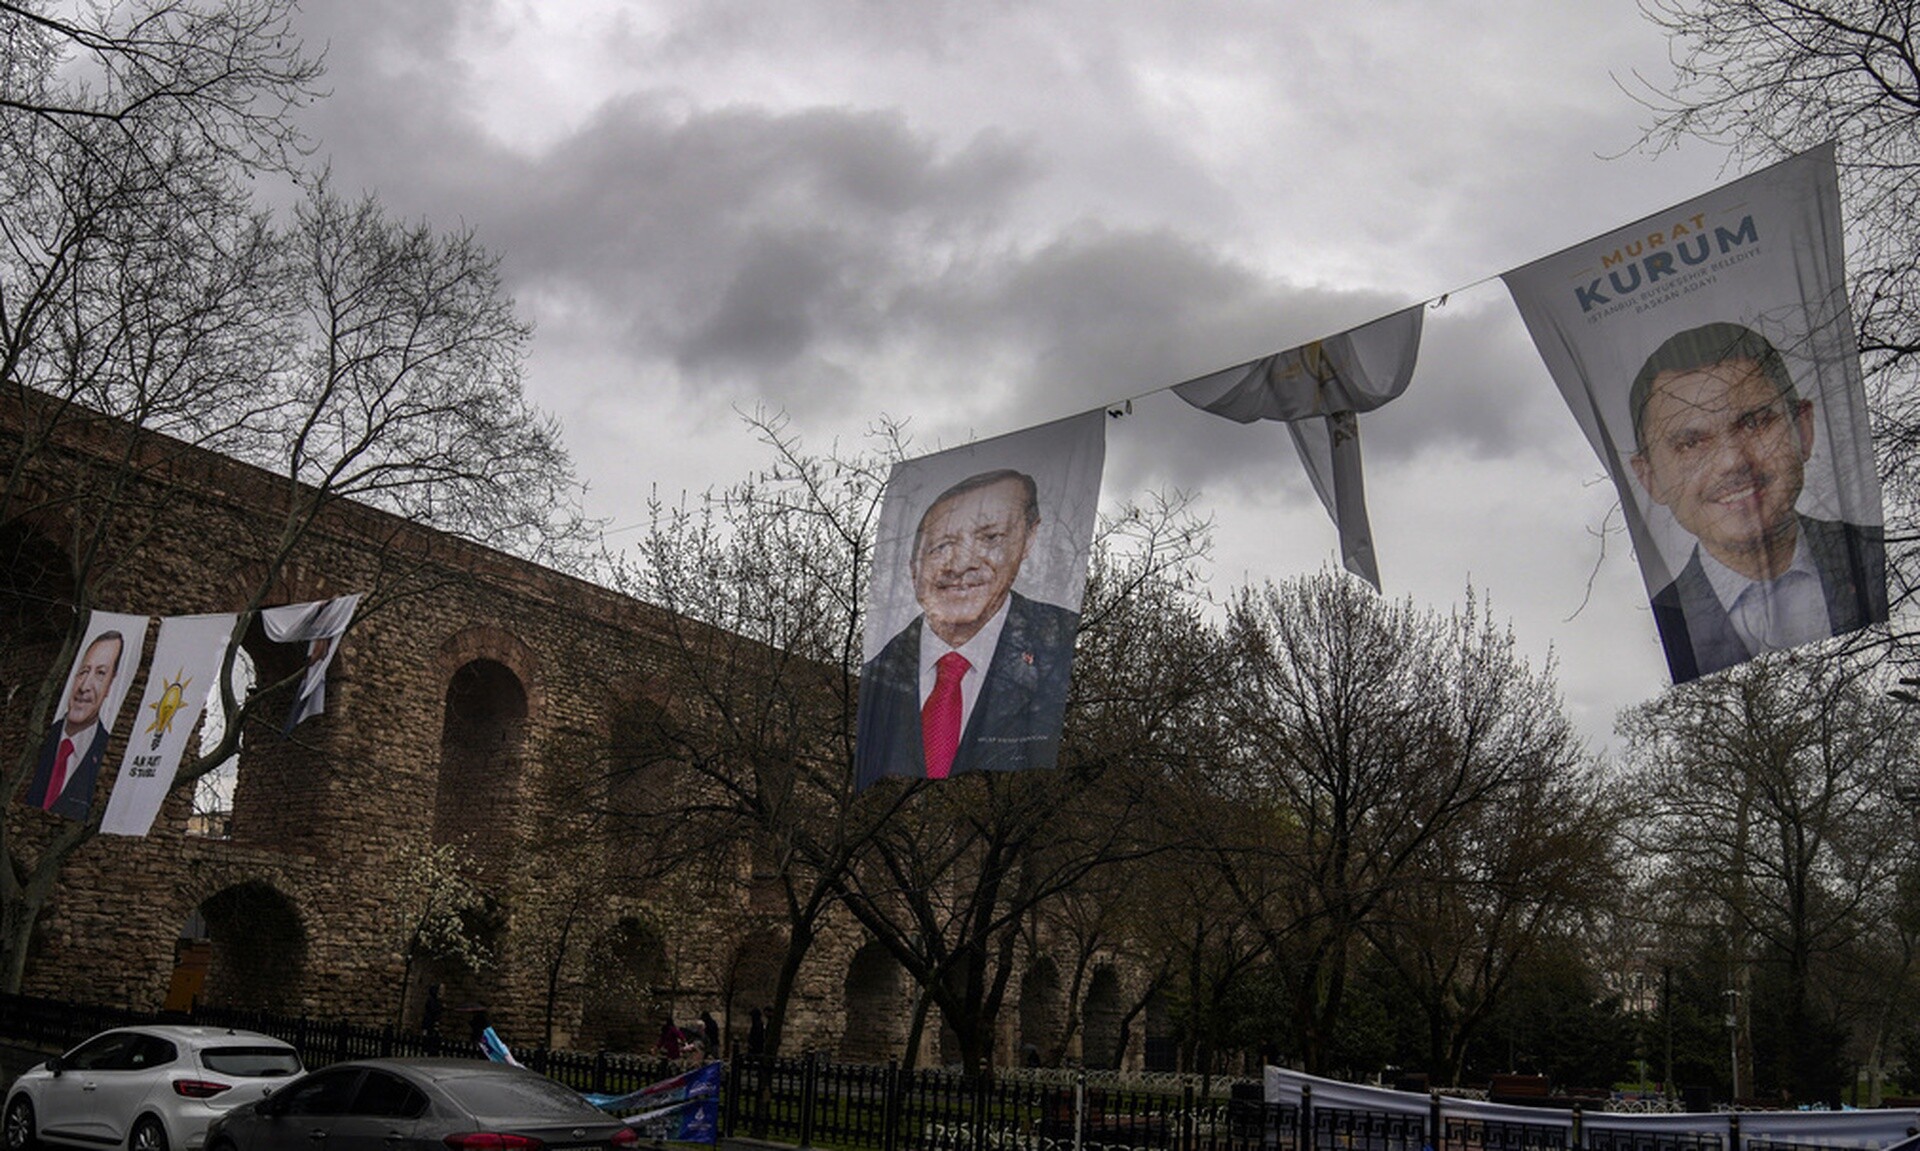 Δημοτικές εκλογές στην Τουρκία: Ο Ερντογάν, ο Ιμάμογλου και η κρίσιμη μάχη για την Κωνσταντινούπολη